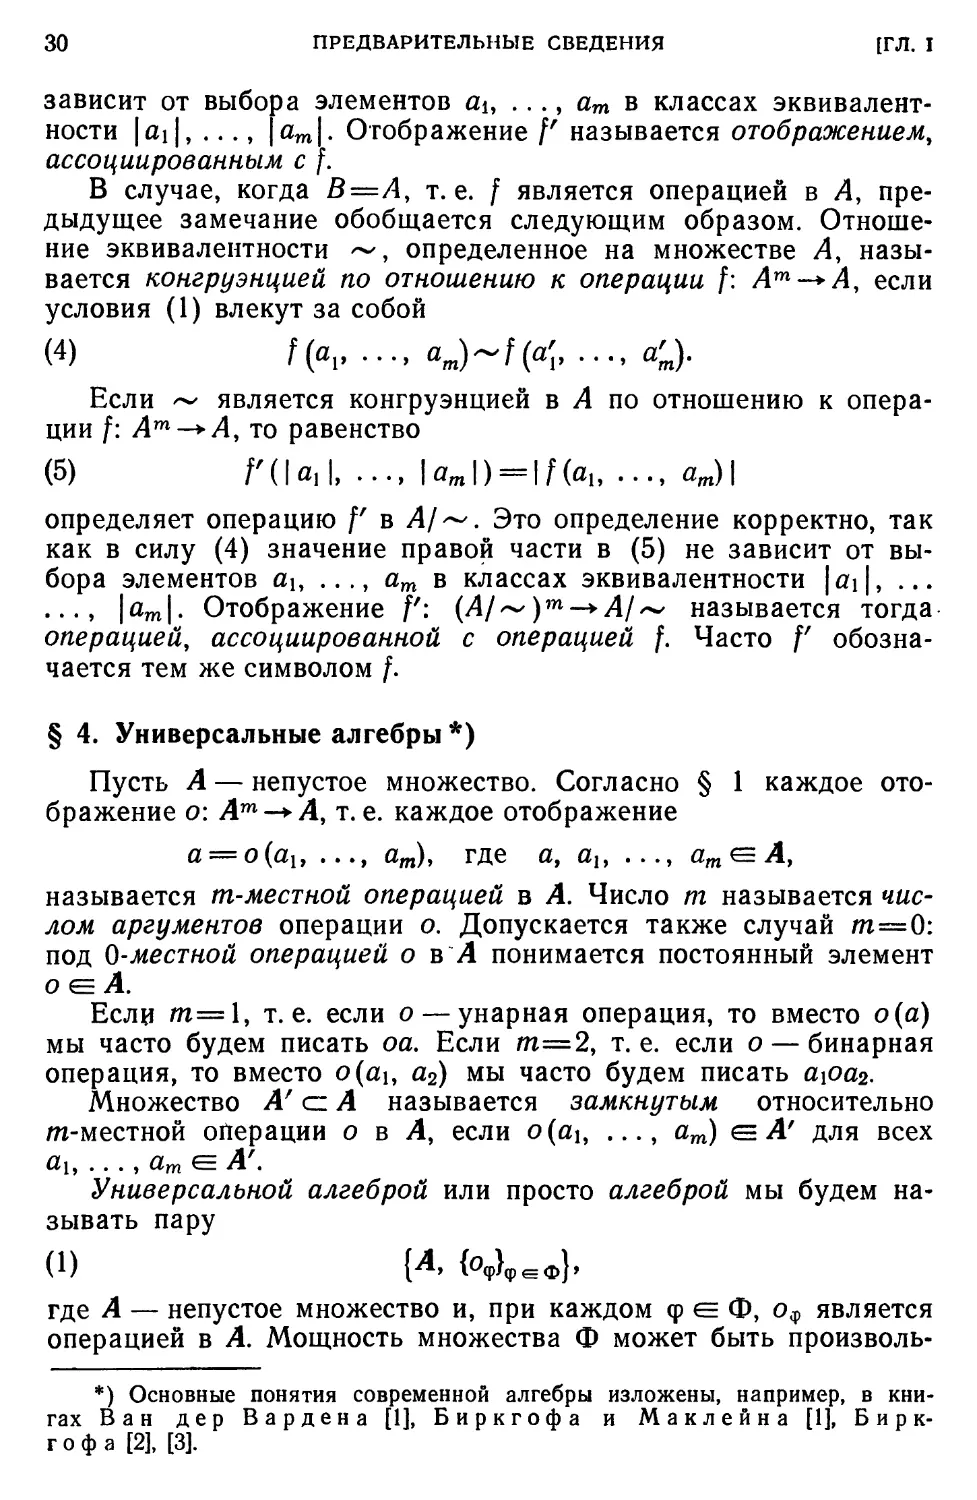 § 4. Универсальные алгебры